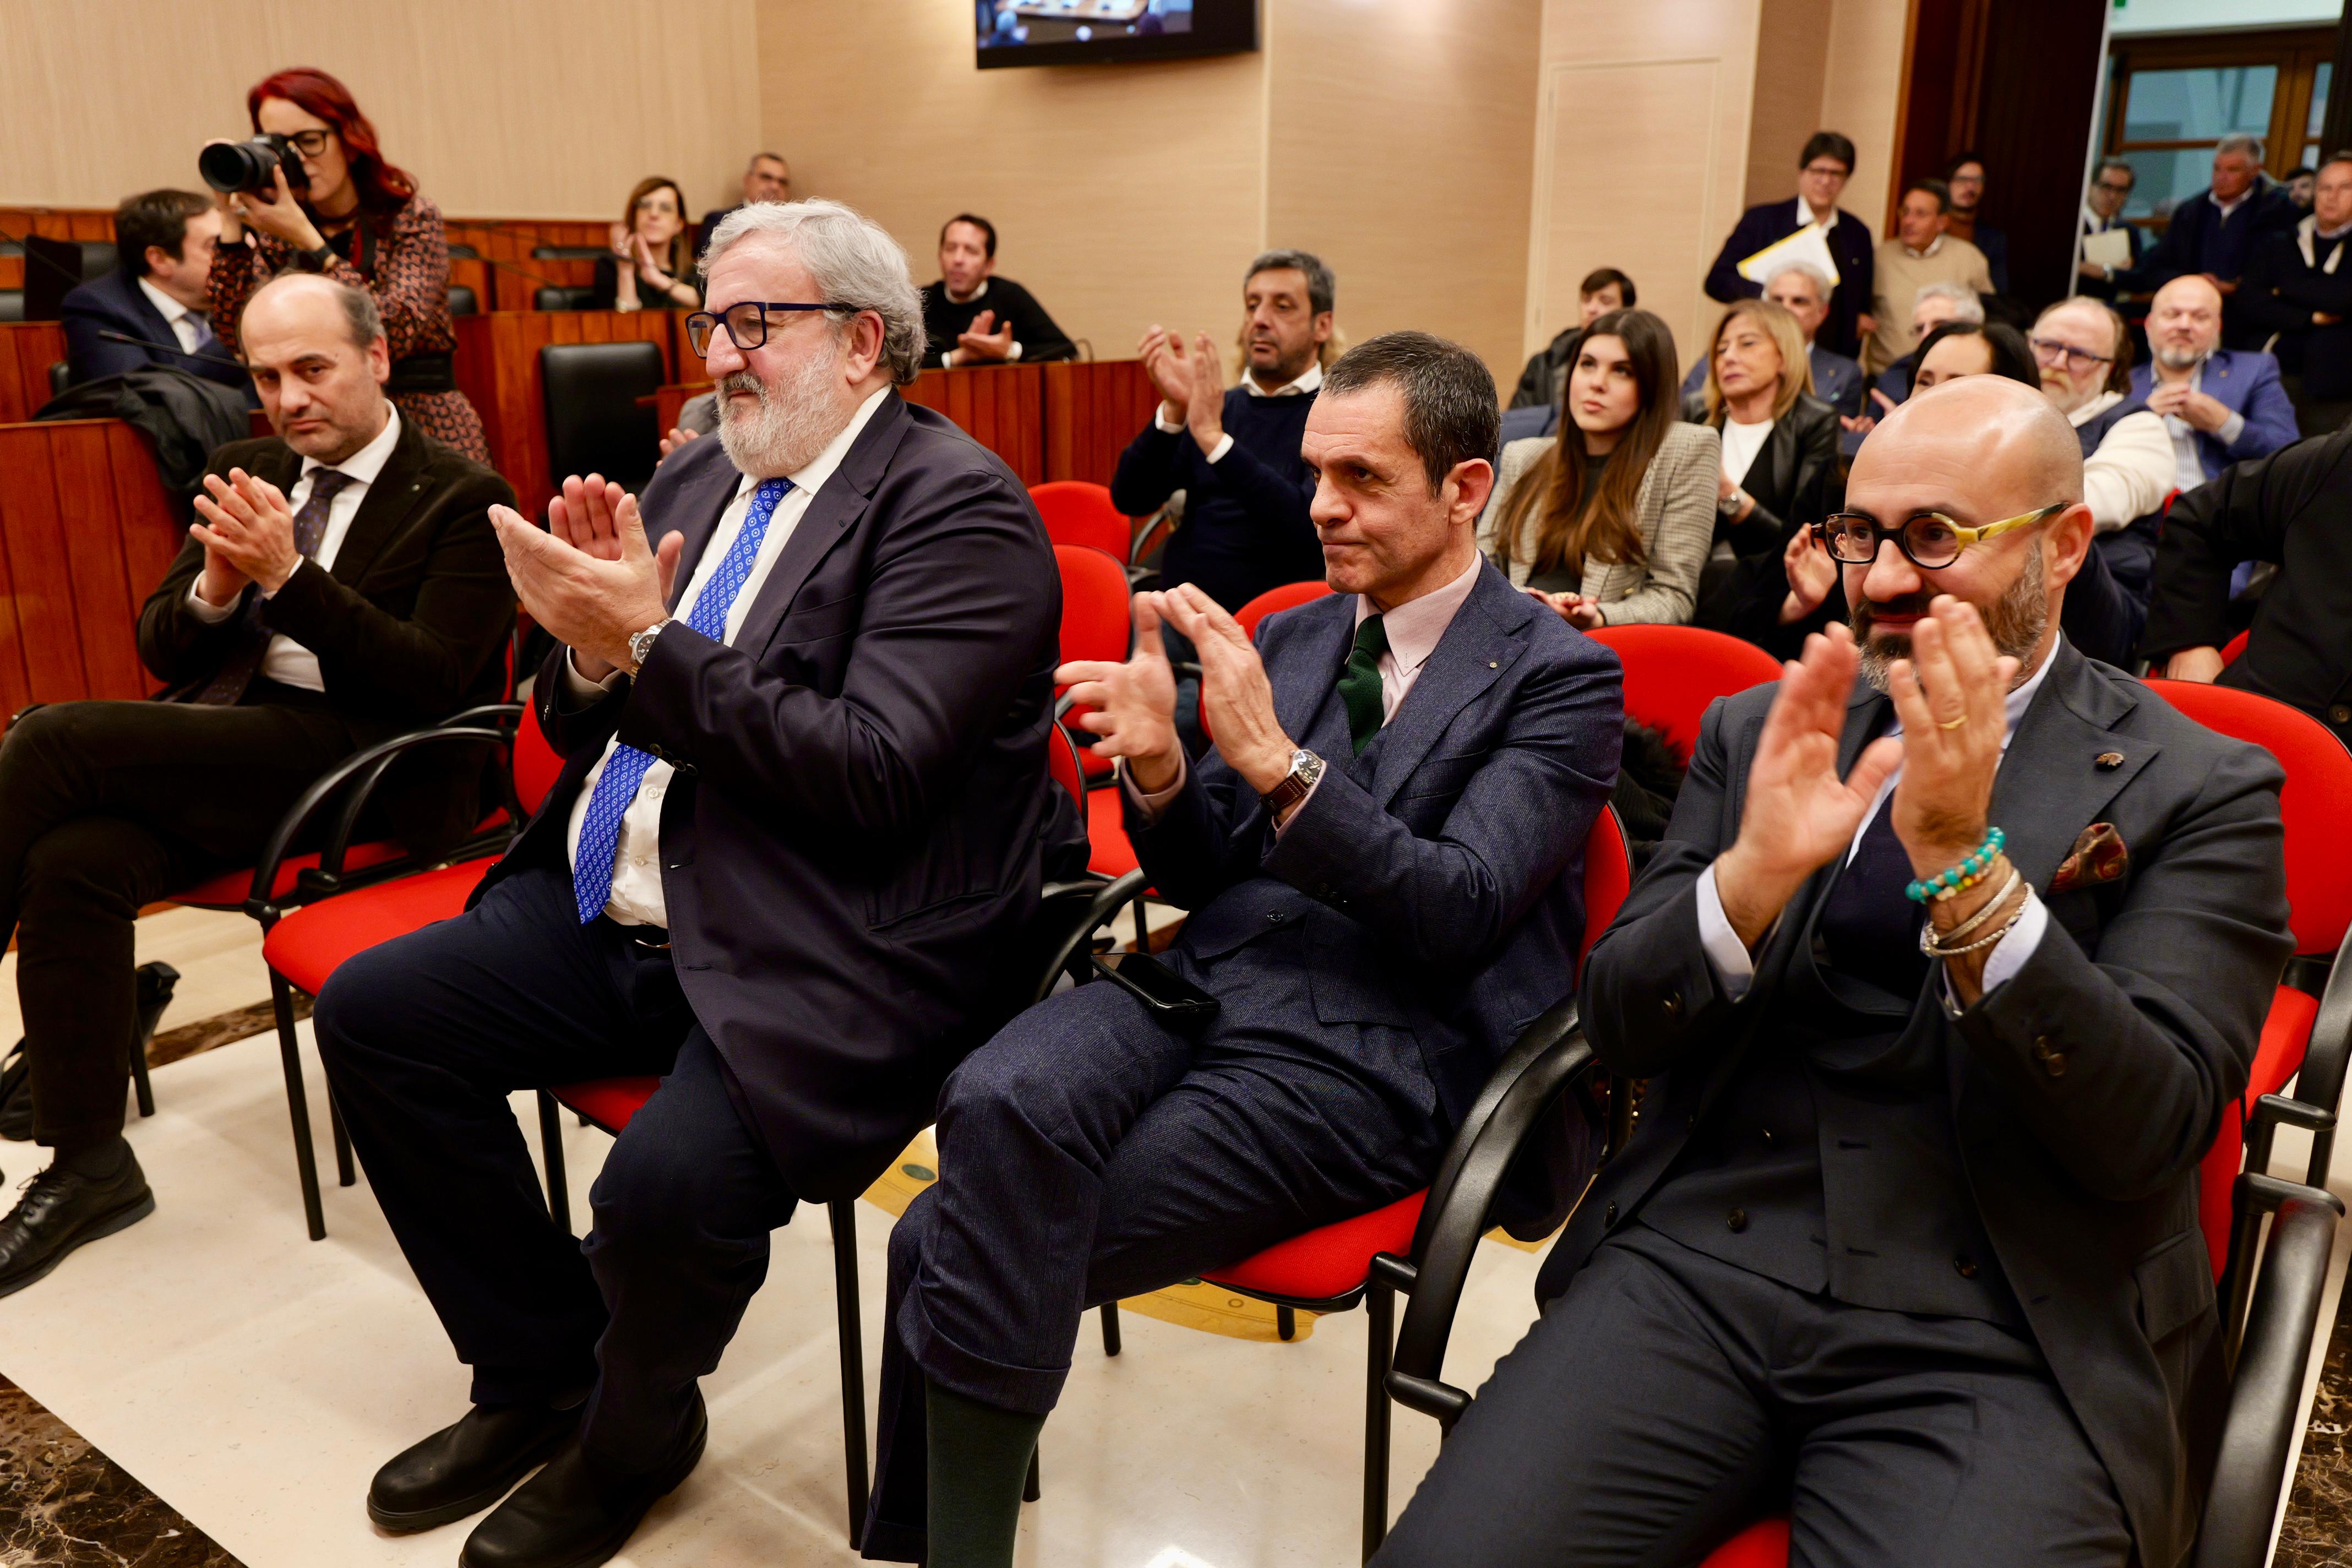 Galleria Premio Giorgio Ambrosoli e Regione Puglia per promuovere lo stato di diritto in funzione dello sviluppo economico e sociale - Diapositiva 8 di 8